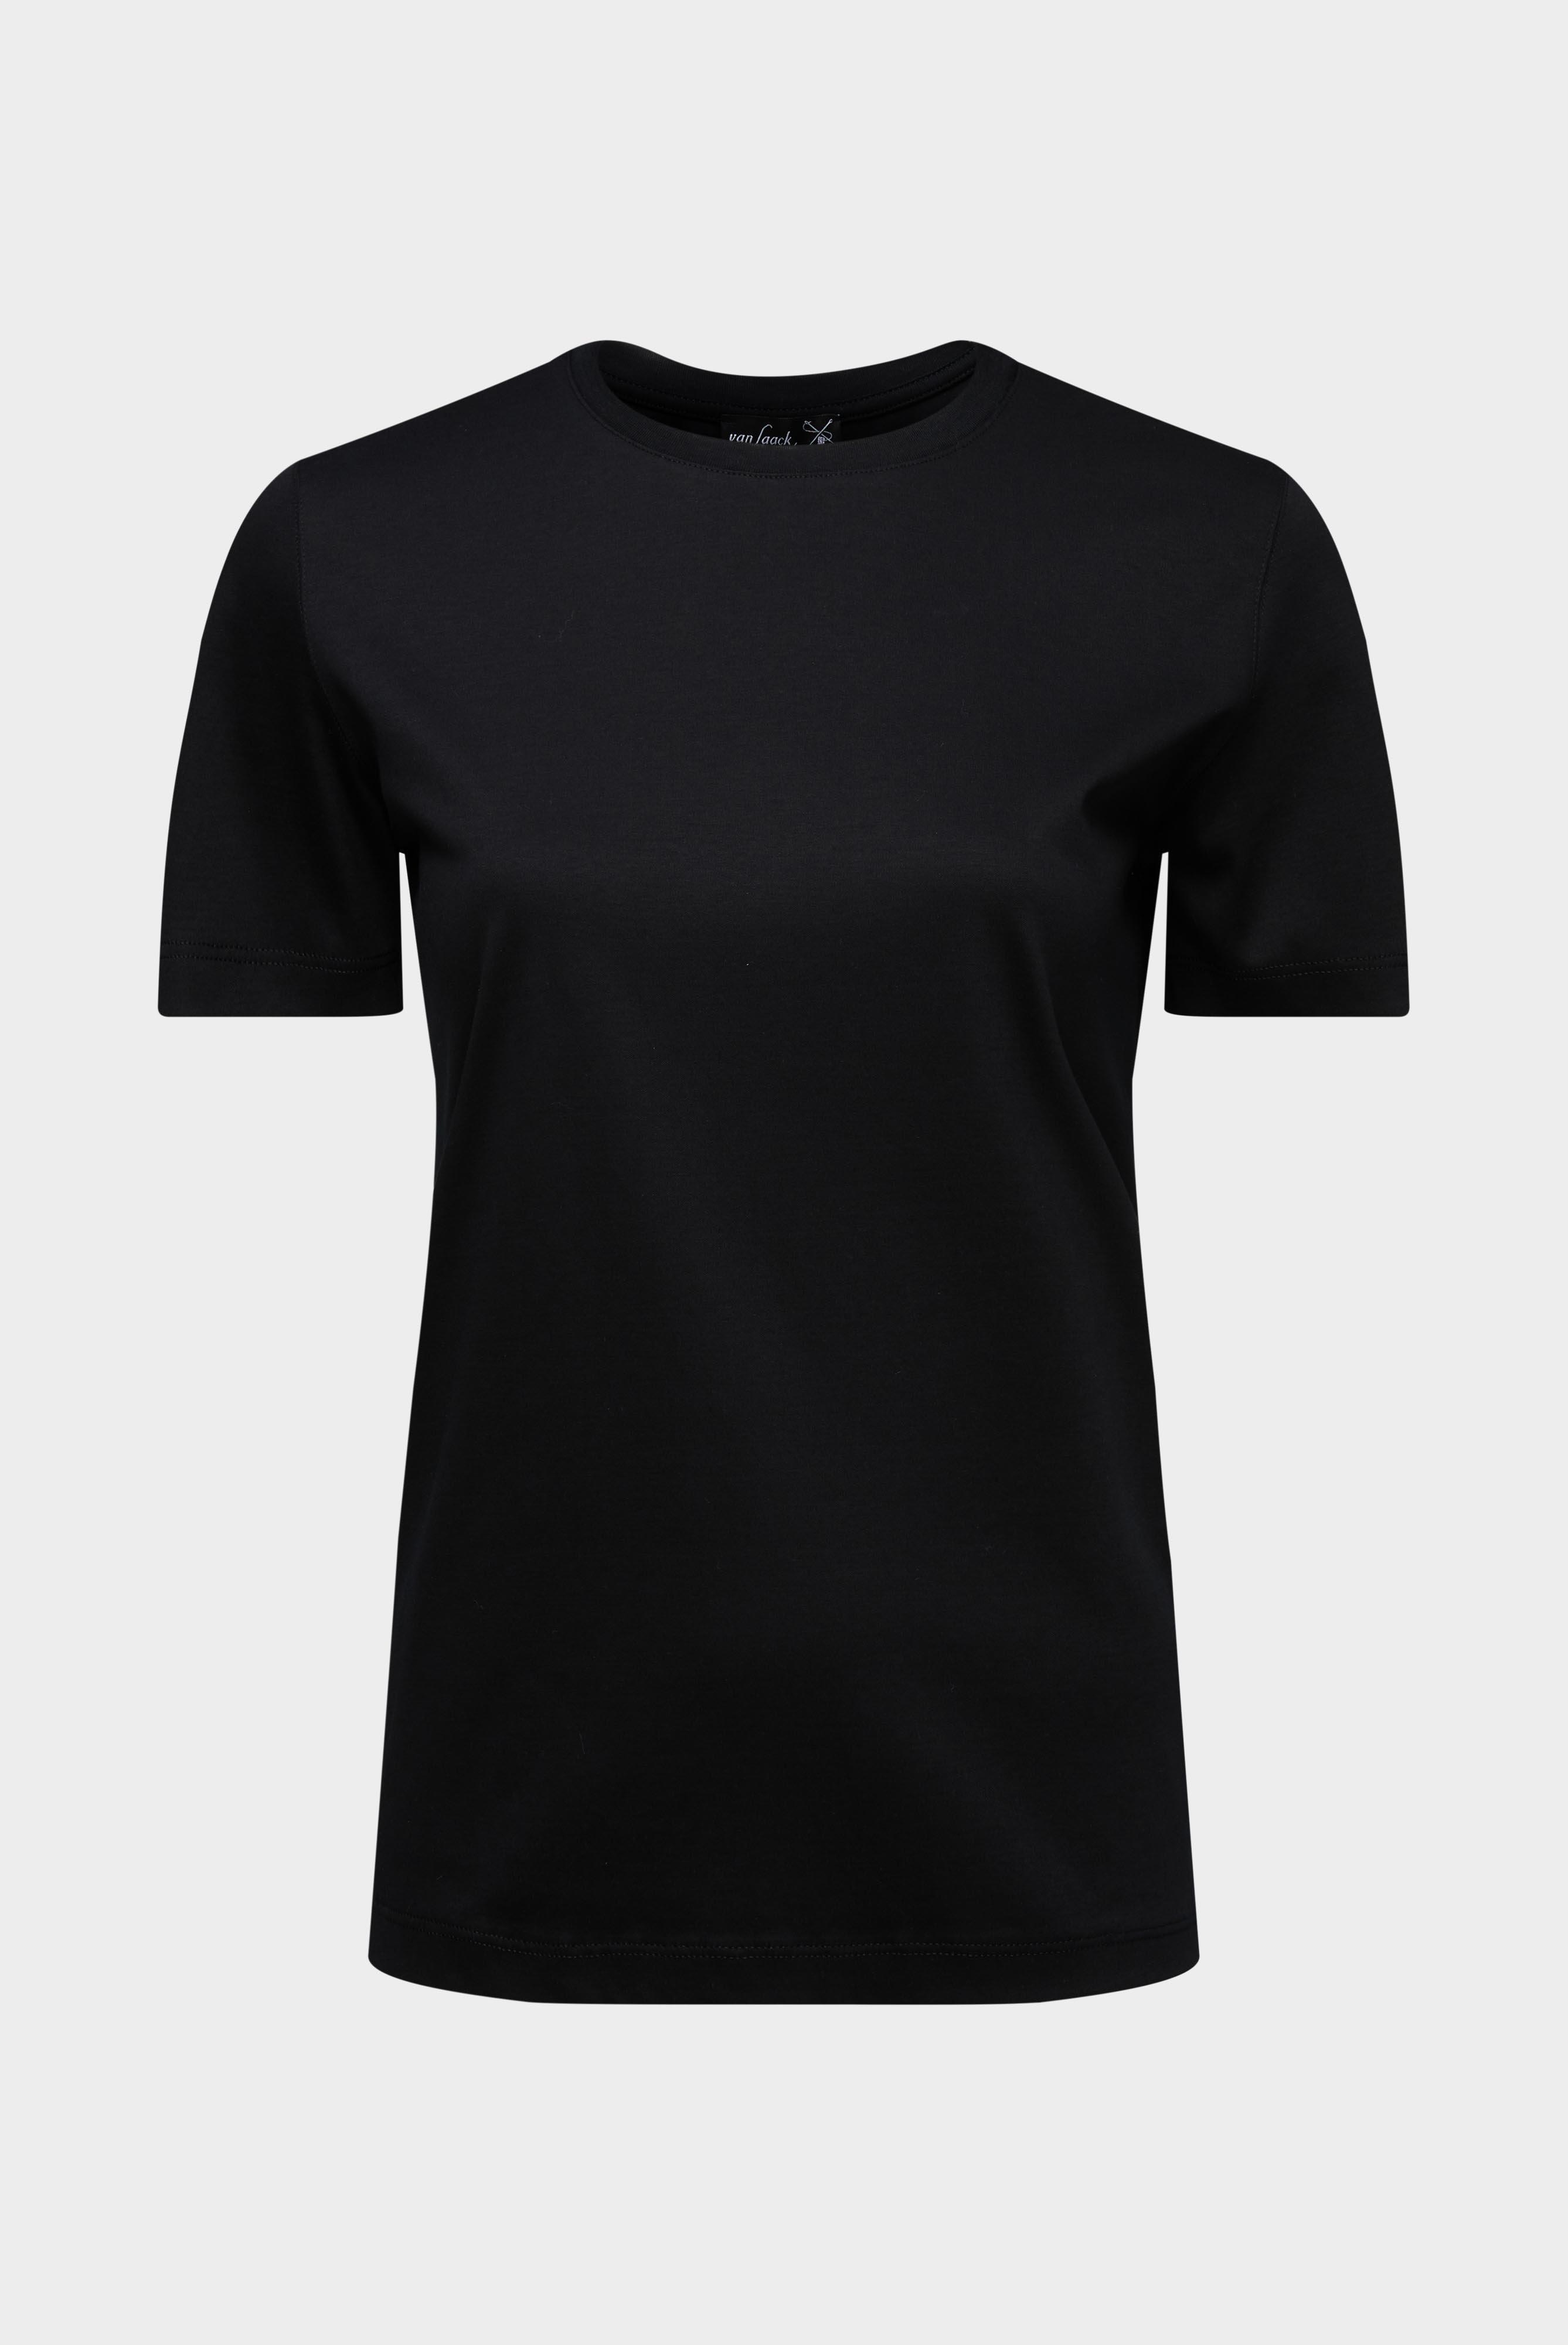 Tops & T-Shirts+Jersey T-Shirt+05.6384.18.180031.099.32